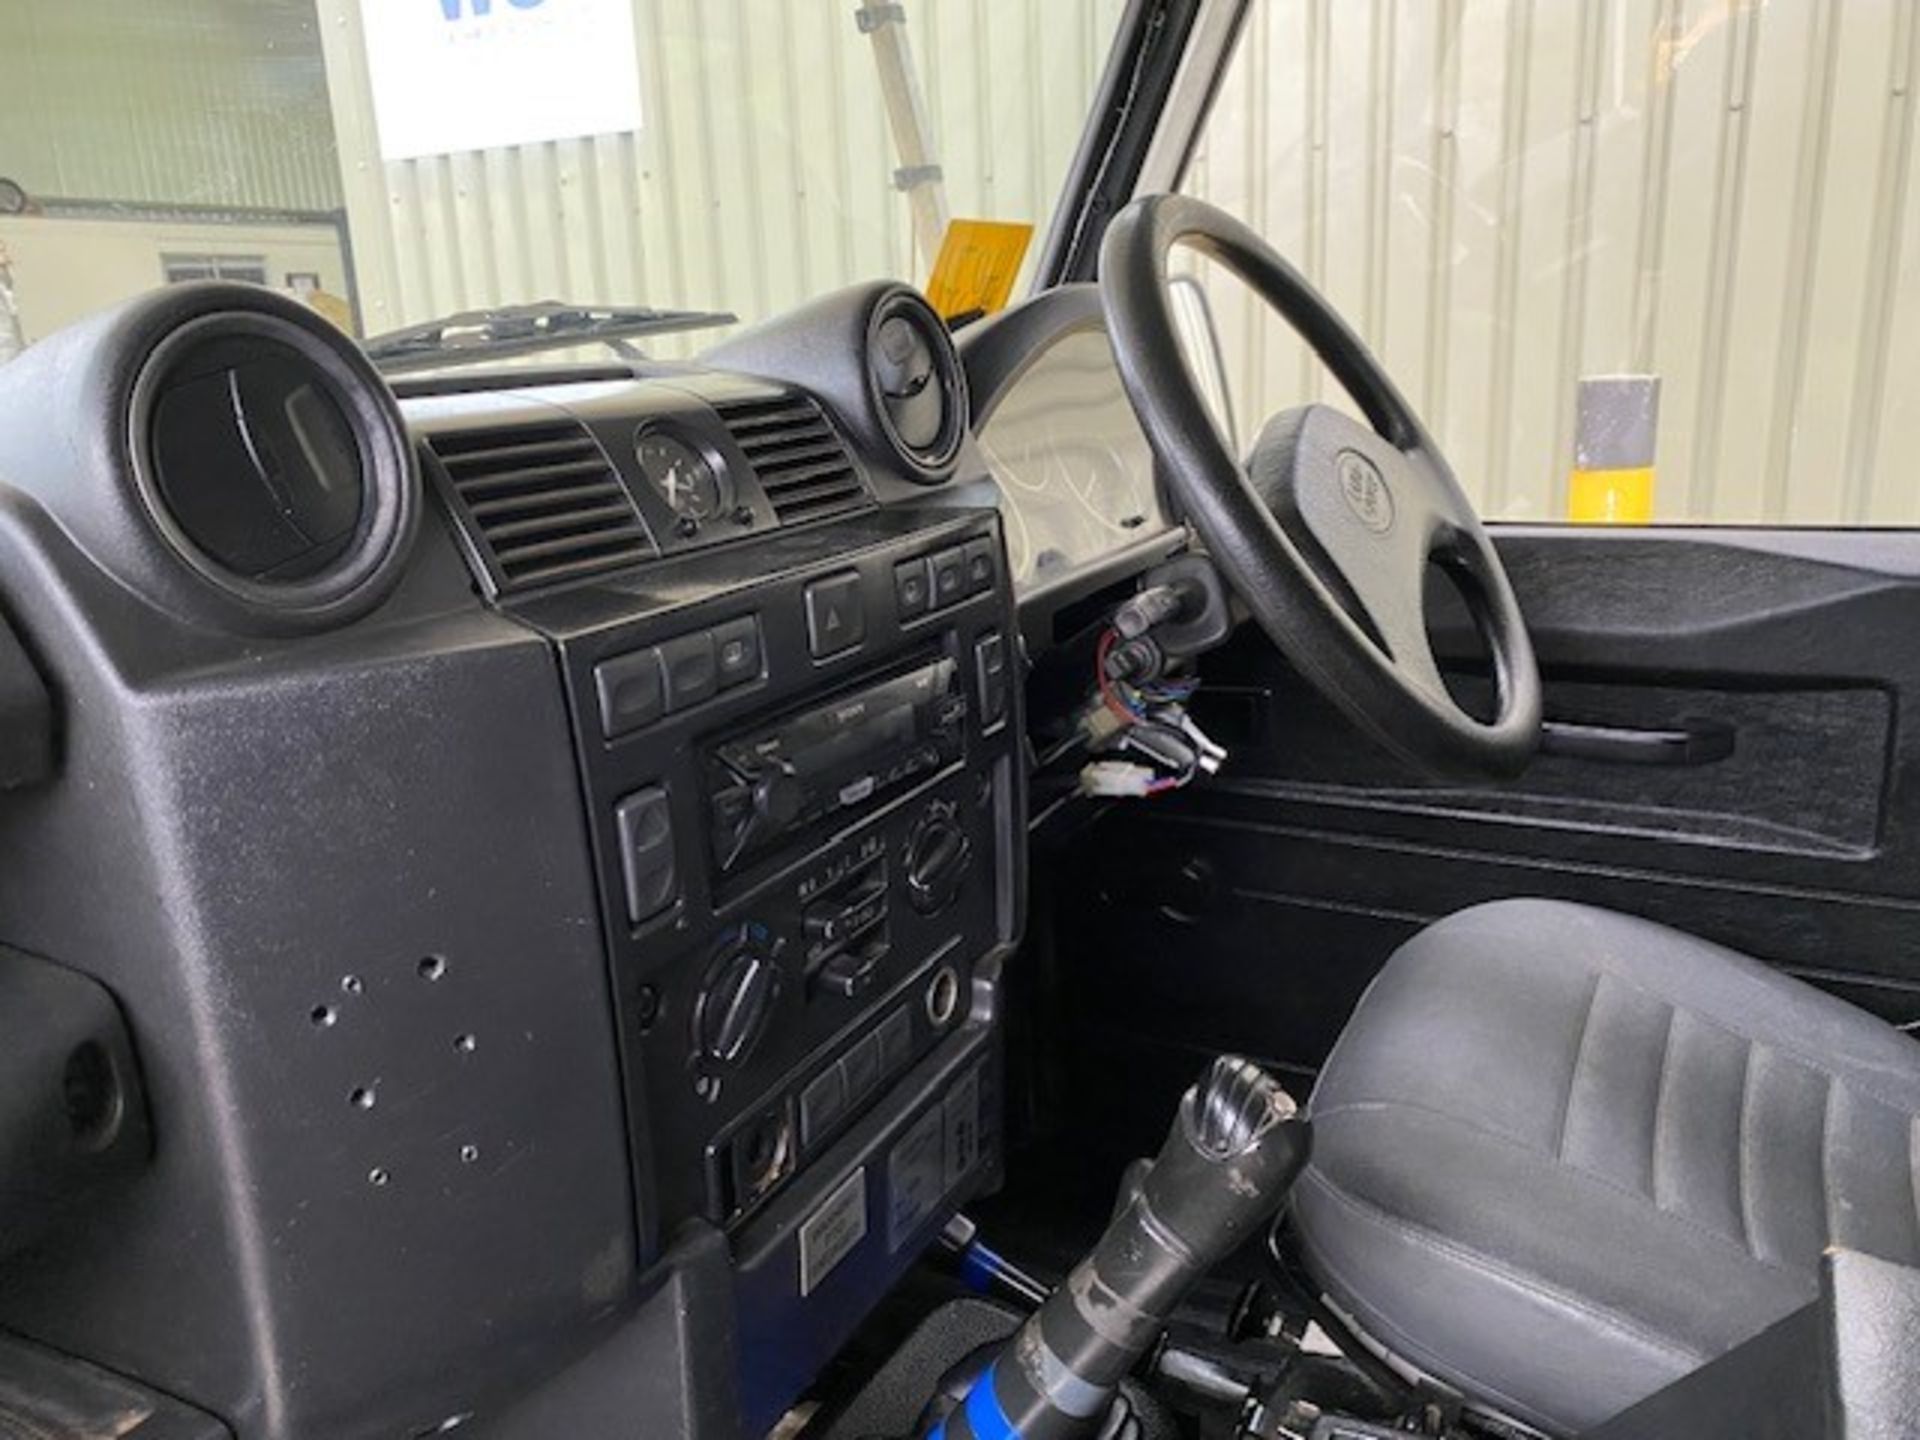 Land Rover Defender 110 2.4 Utility (mobile workshop) - Image 32 of 64